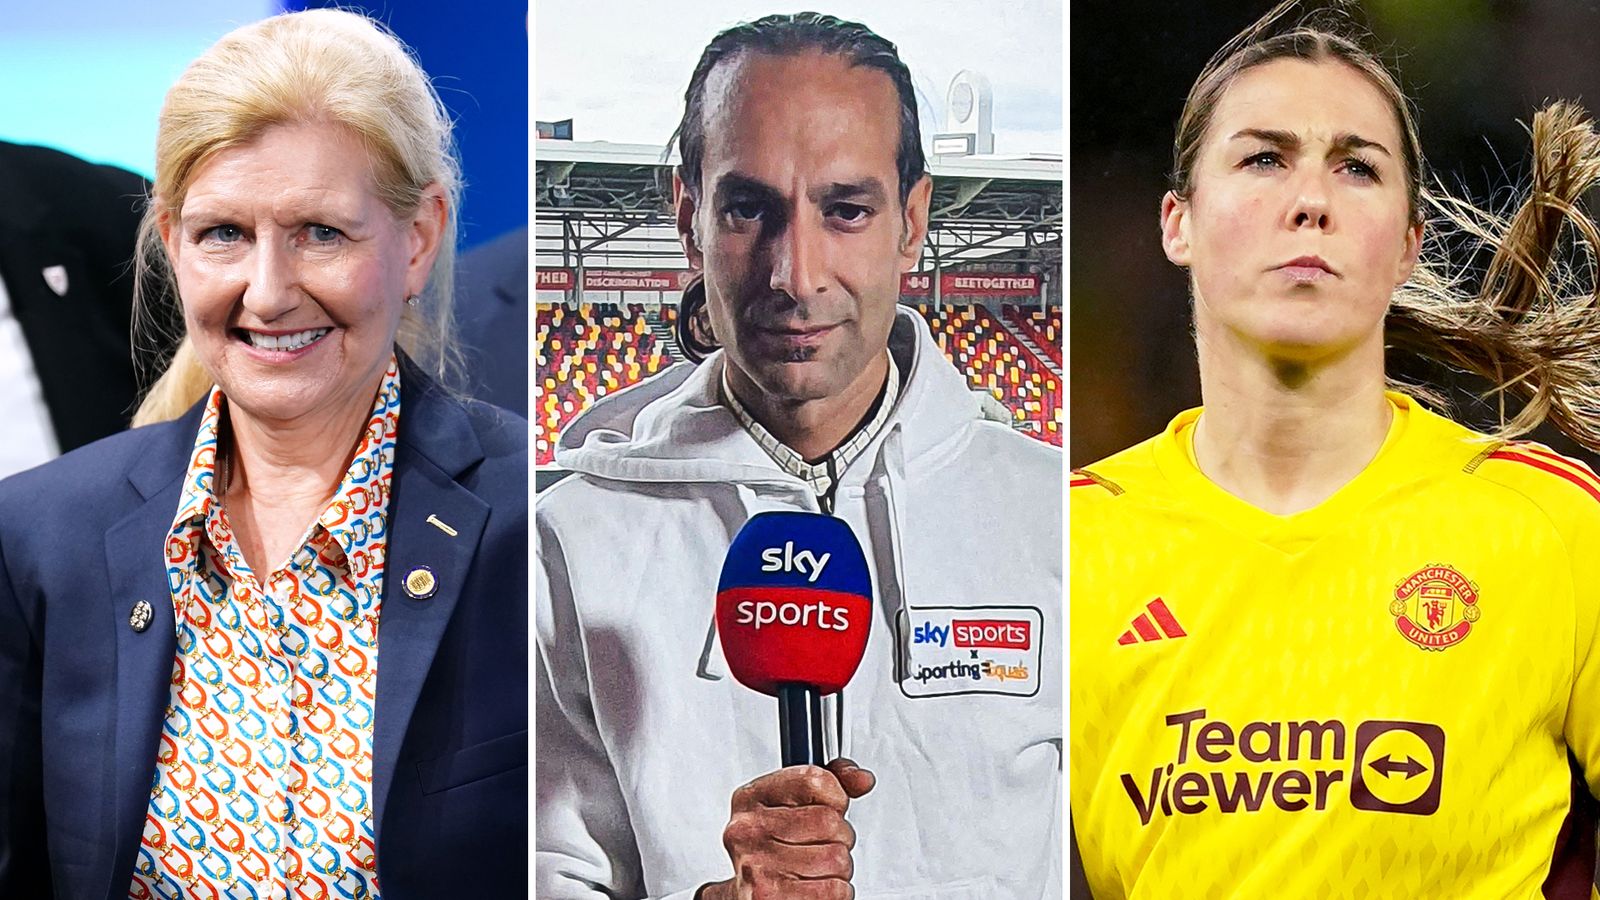 รายการพลังความหลากหลาย 23/24: แมรี เอิร์ปส์ของอังกฤษและแมนฯ ยูไนเต็ด, เด๊บบี้ ฮิววิตต์ ประธาน FA และเดฟ เทรฮาน ของ Sky Sports News |  ข่าวฟุตบอล